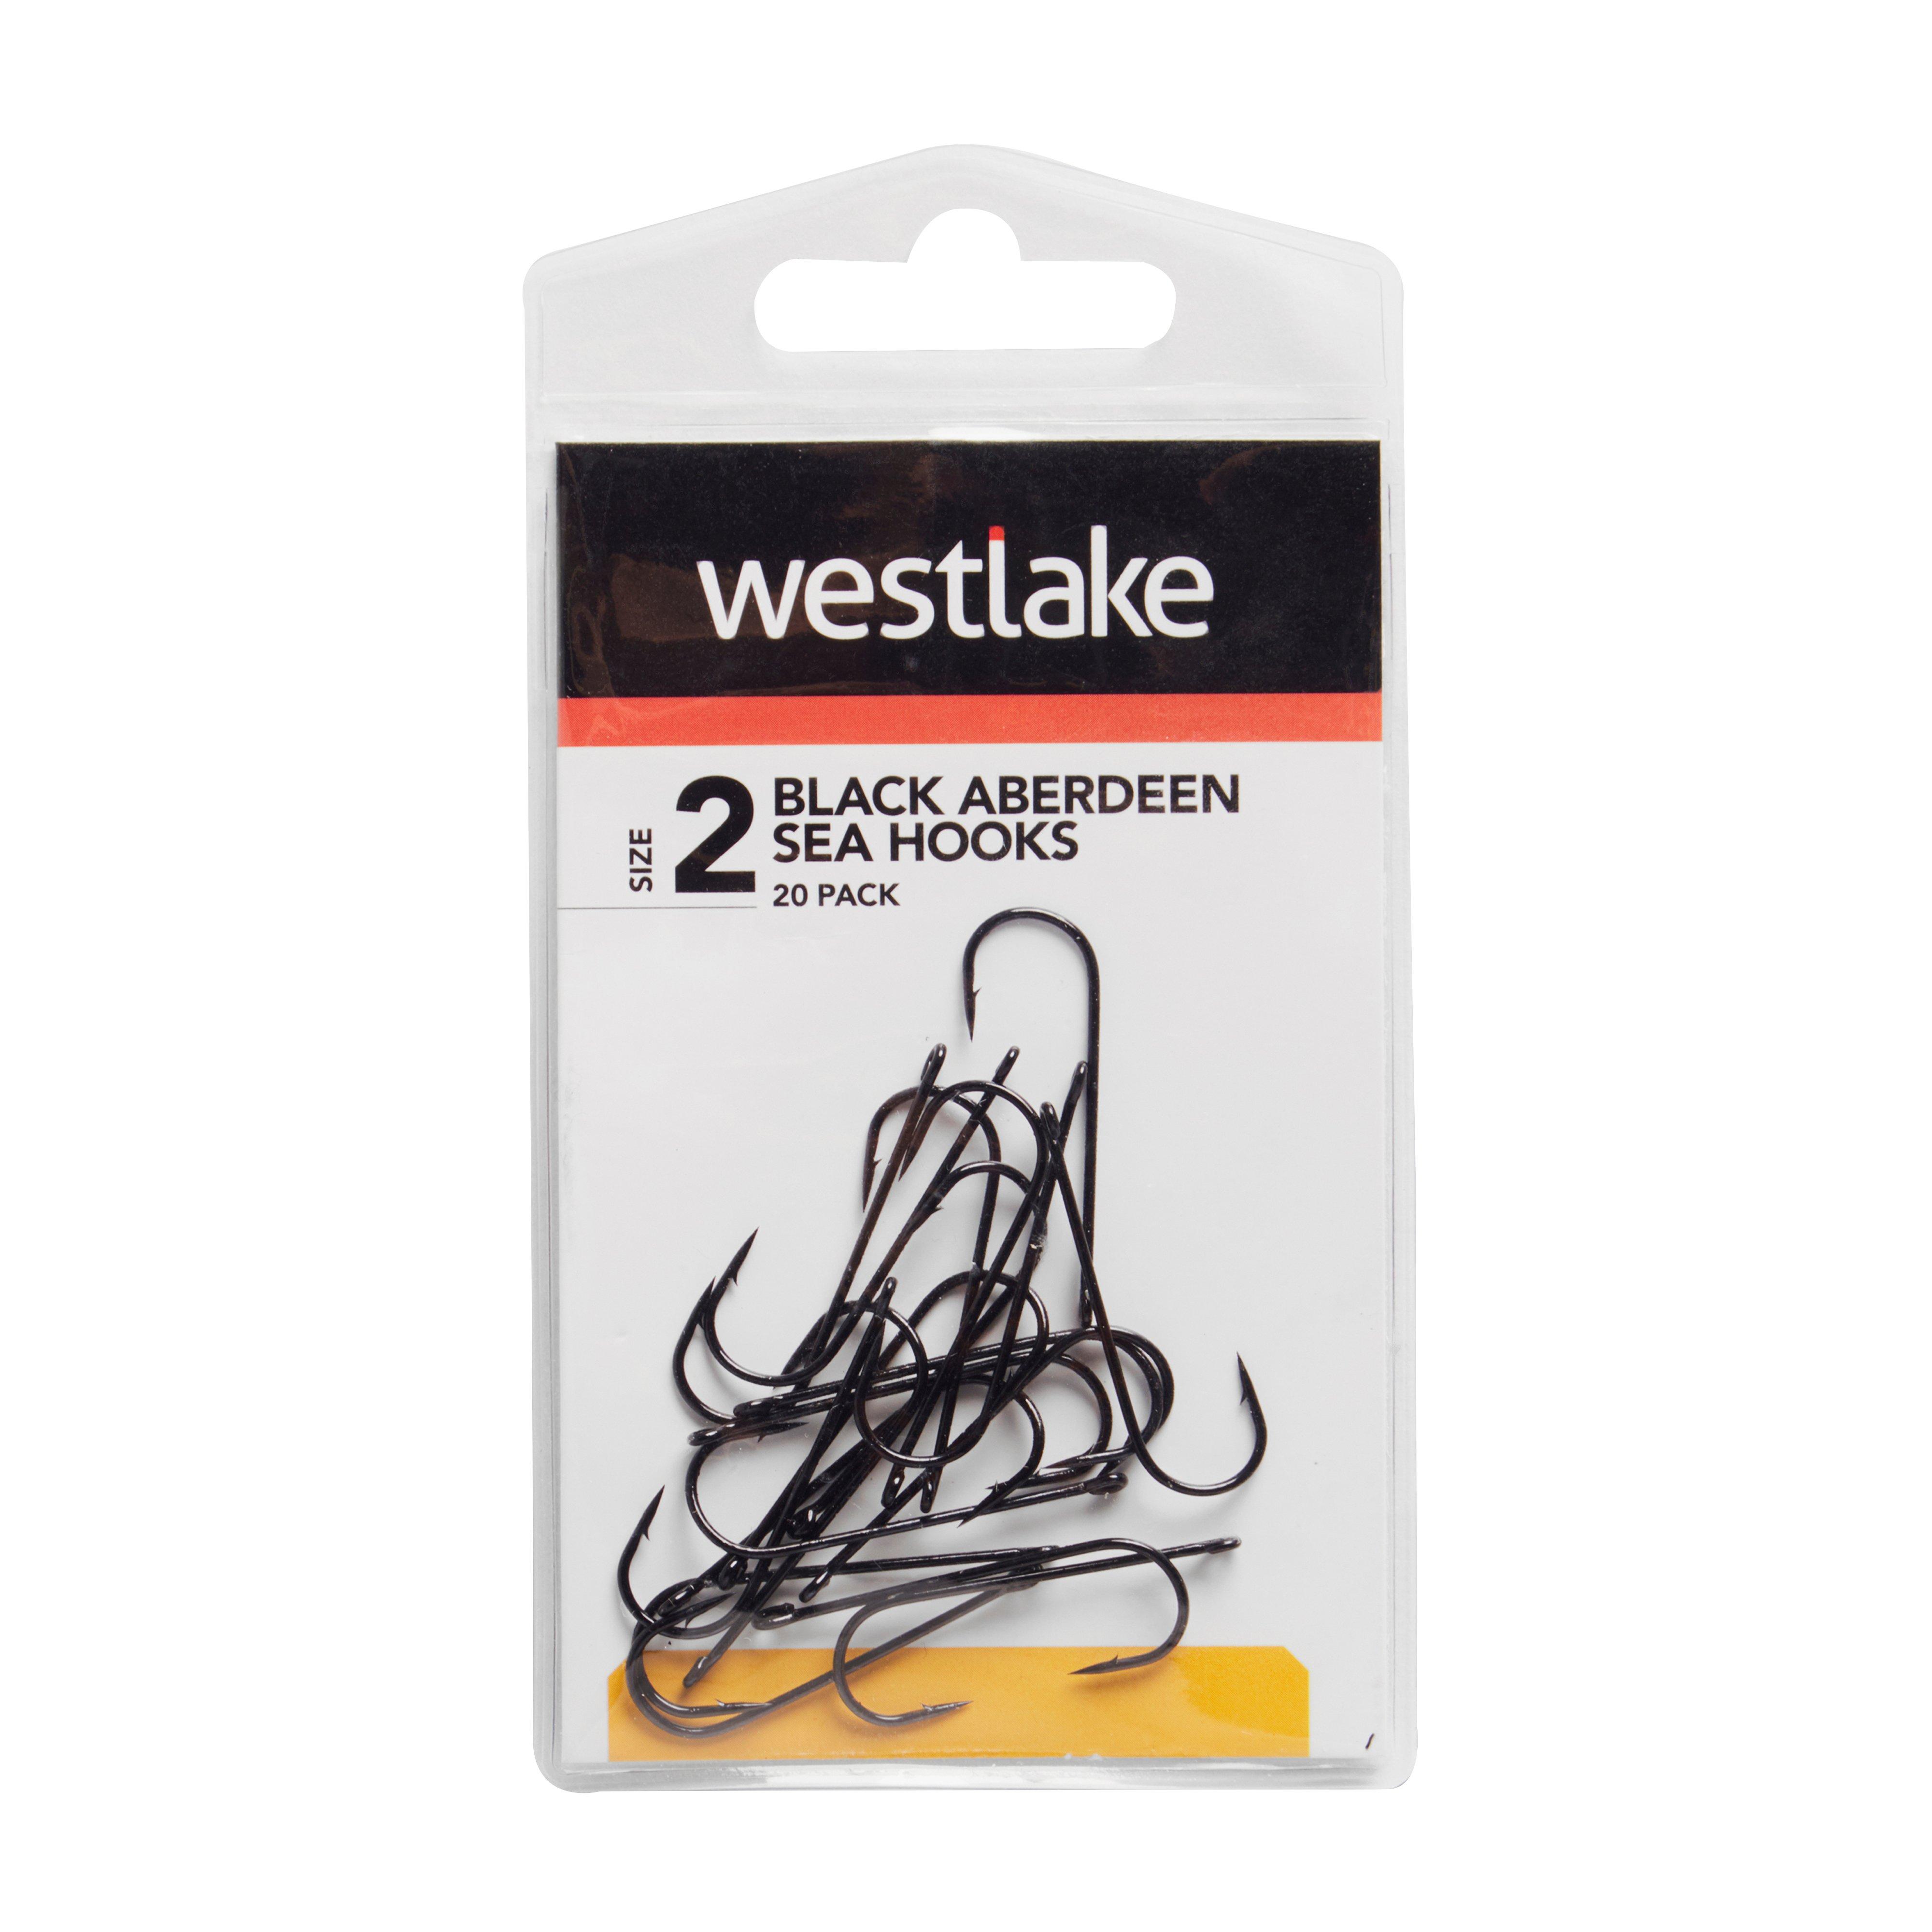 Westlake 20Pk Black Aberdeen 4 Review